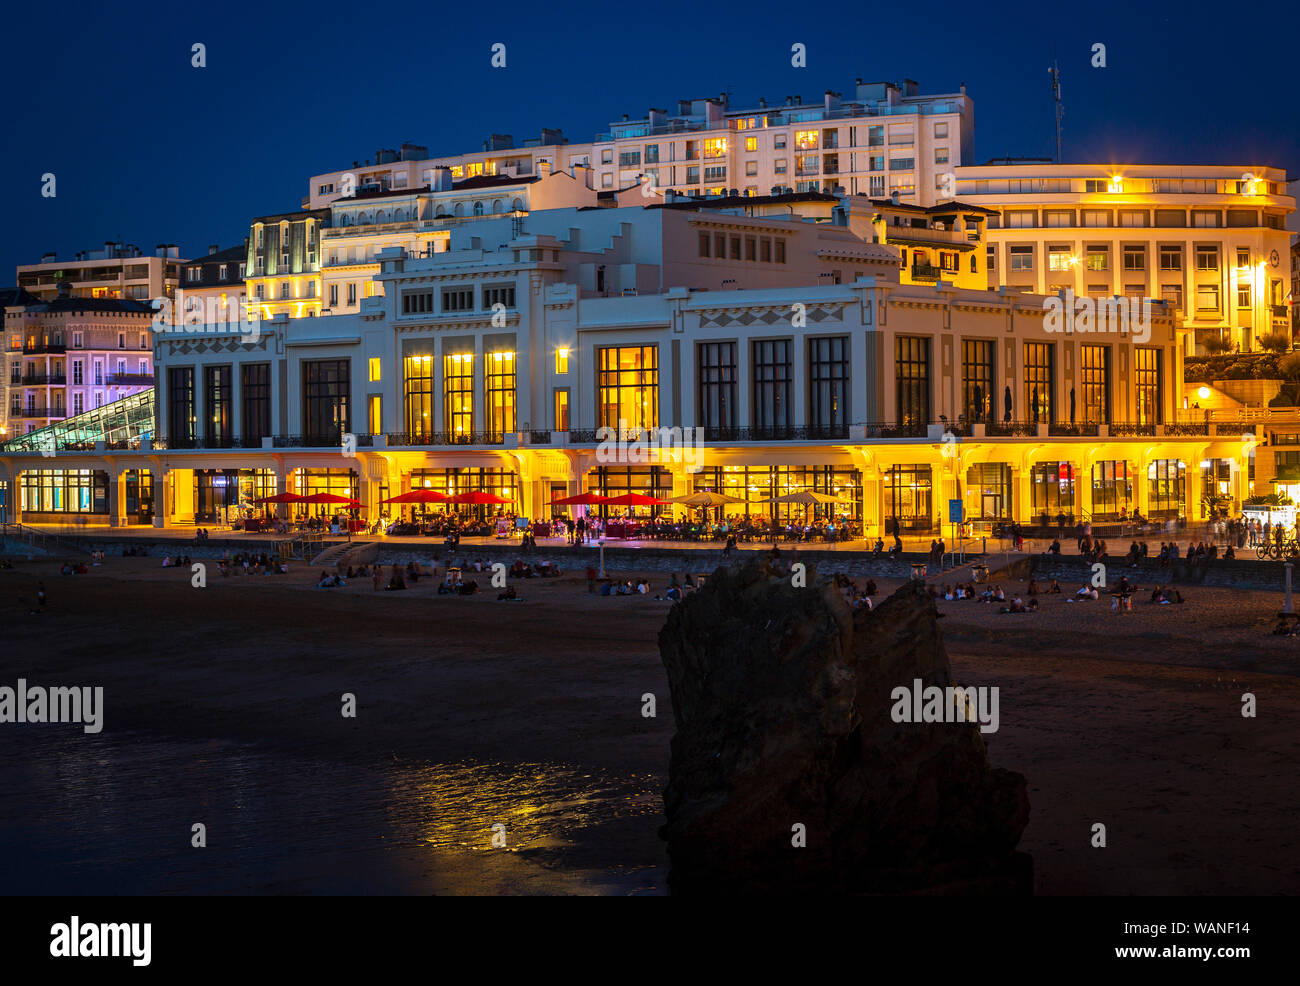 In der Dunkelheit, der Städtischen Casino und Strand von Biarritz (Frankreich). Dieser Raum begrüßt, den G7-Gipfel 2019 Vom 24. bis 26. August. Stockfoto